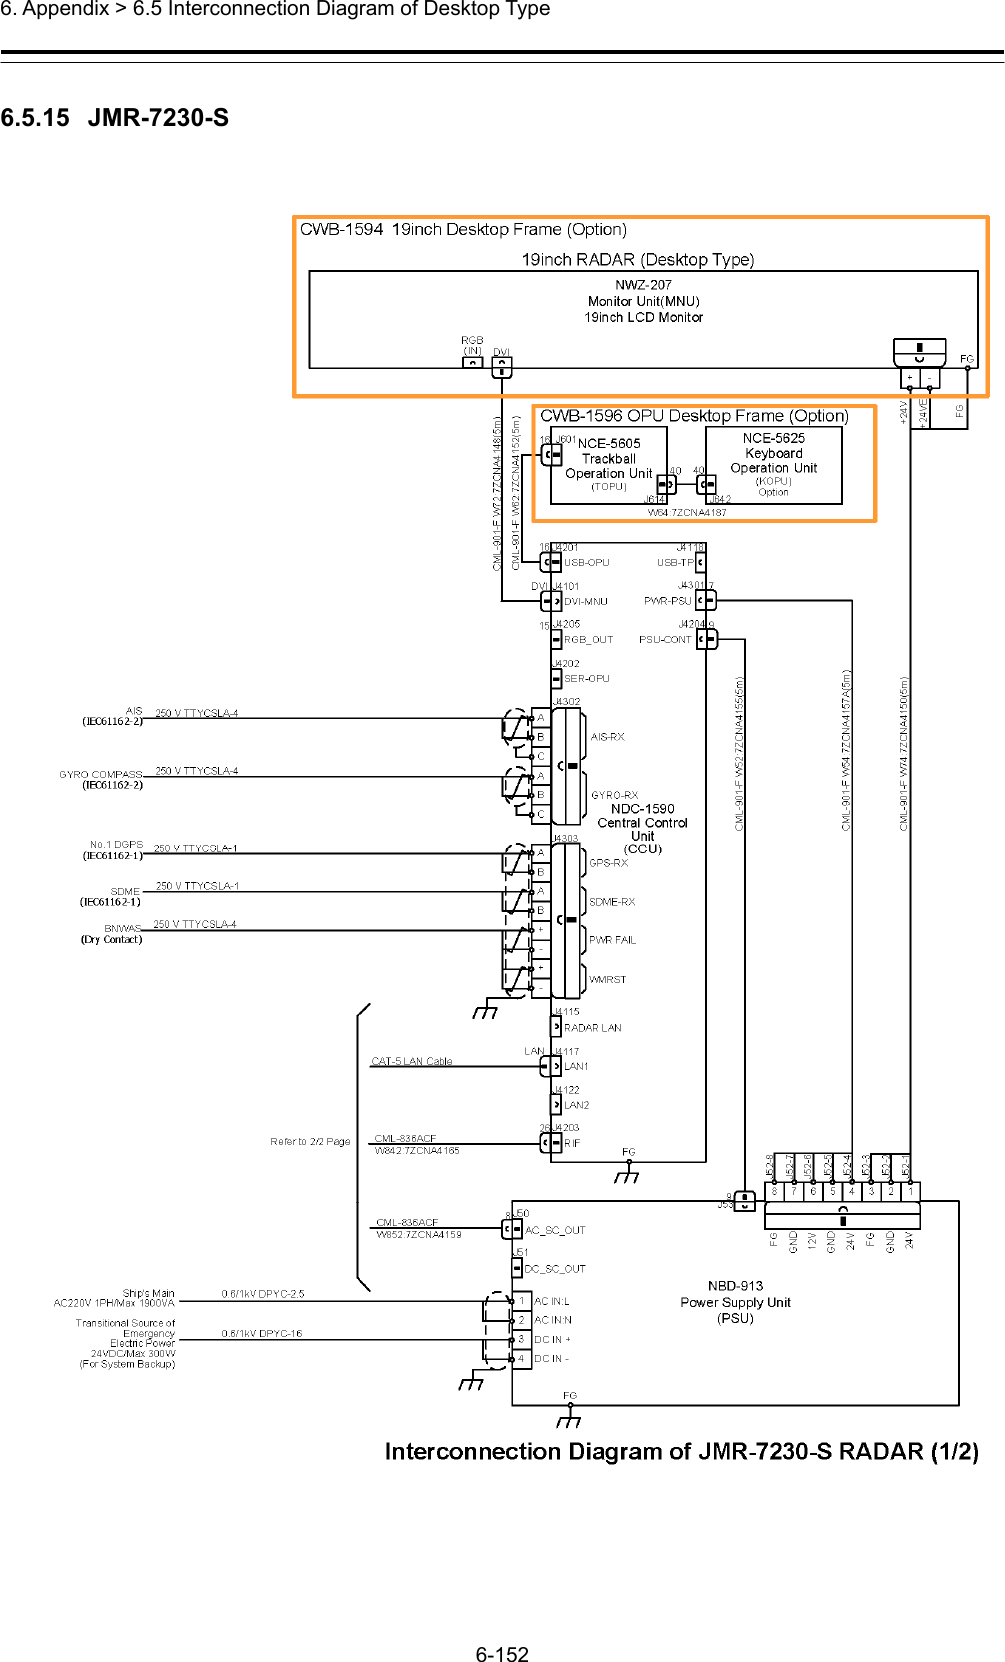  6. Appendix &gt; 6.5 Interconnection Diagram of Desktop Type 6-152  6.5.15  JMR-7230-S  